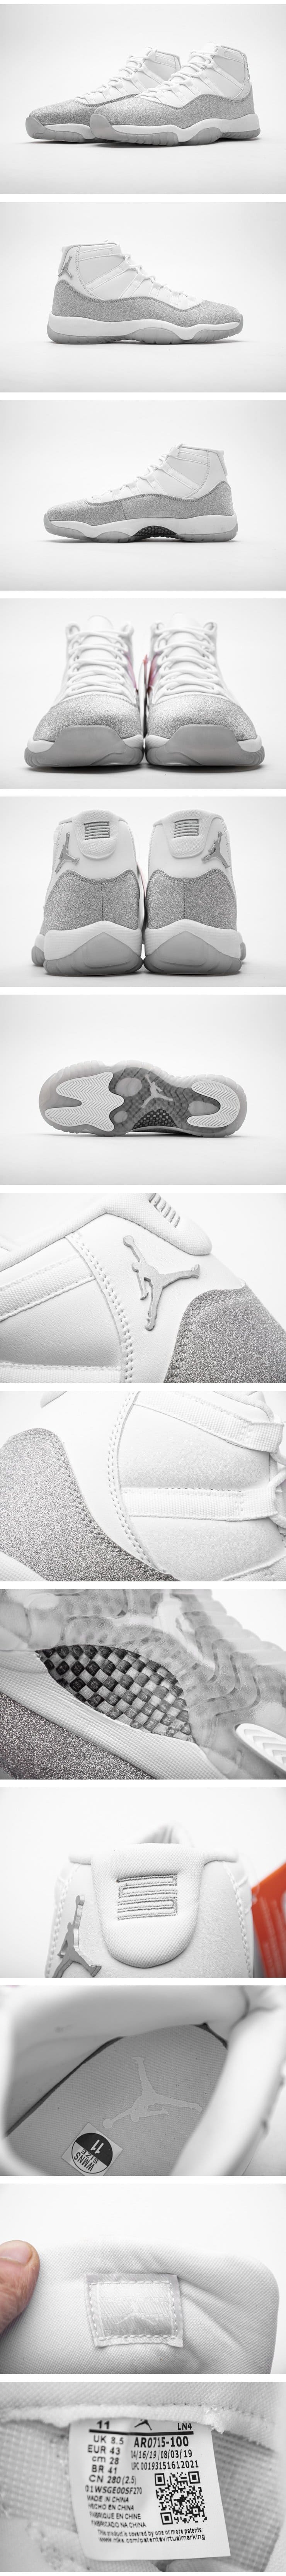 Nike Air Jordan 11 Retro White Metallic Silve AR0715100 ナイキ エア ジョーダン11 レトロ ホワイト メタリック シルバー